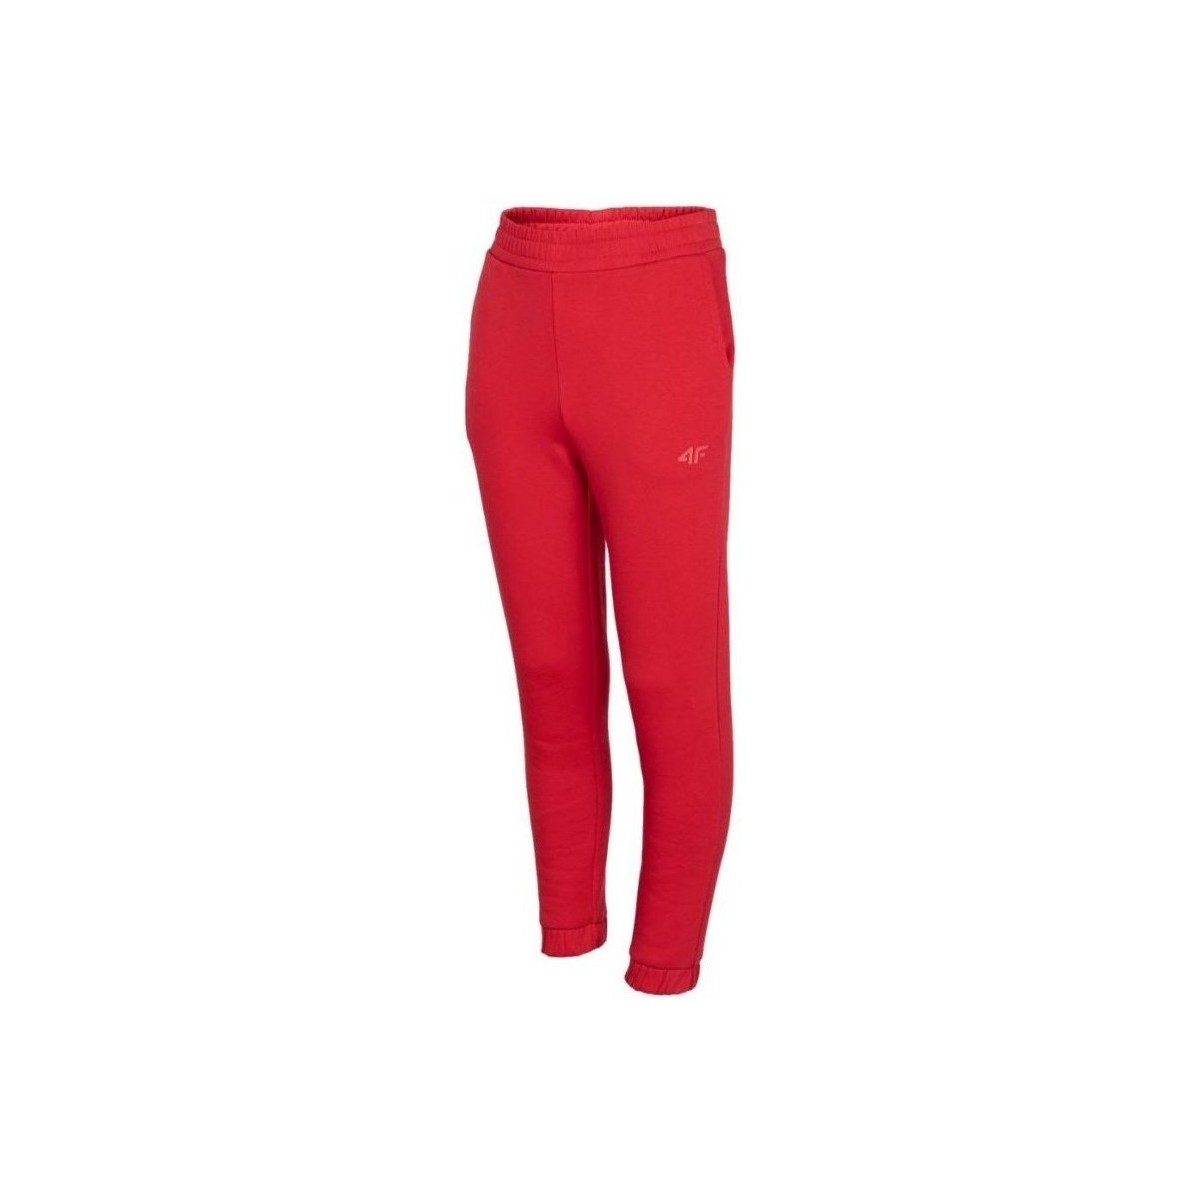 Vêtements Fille Pantalons 4F JSPDD002 Rouge